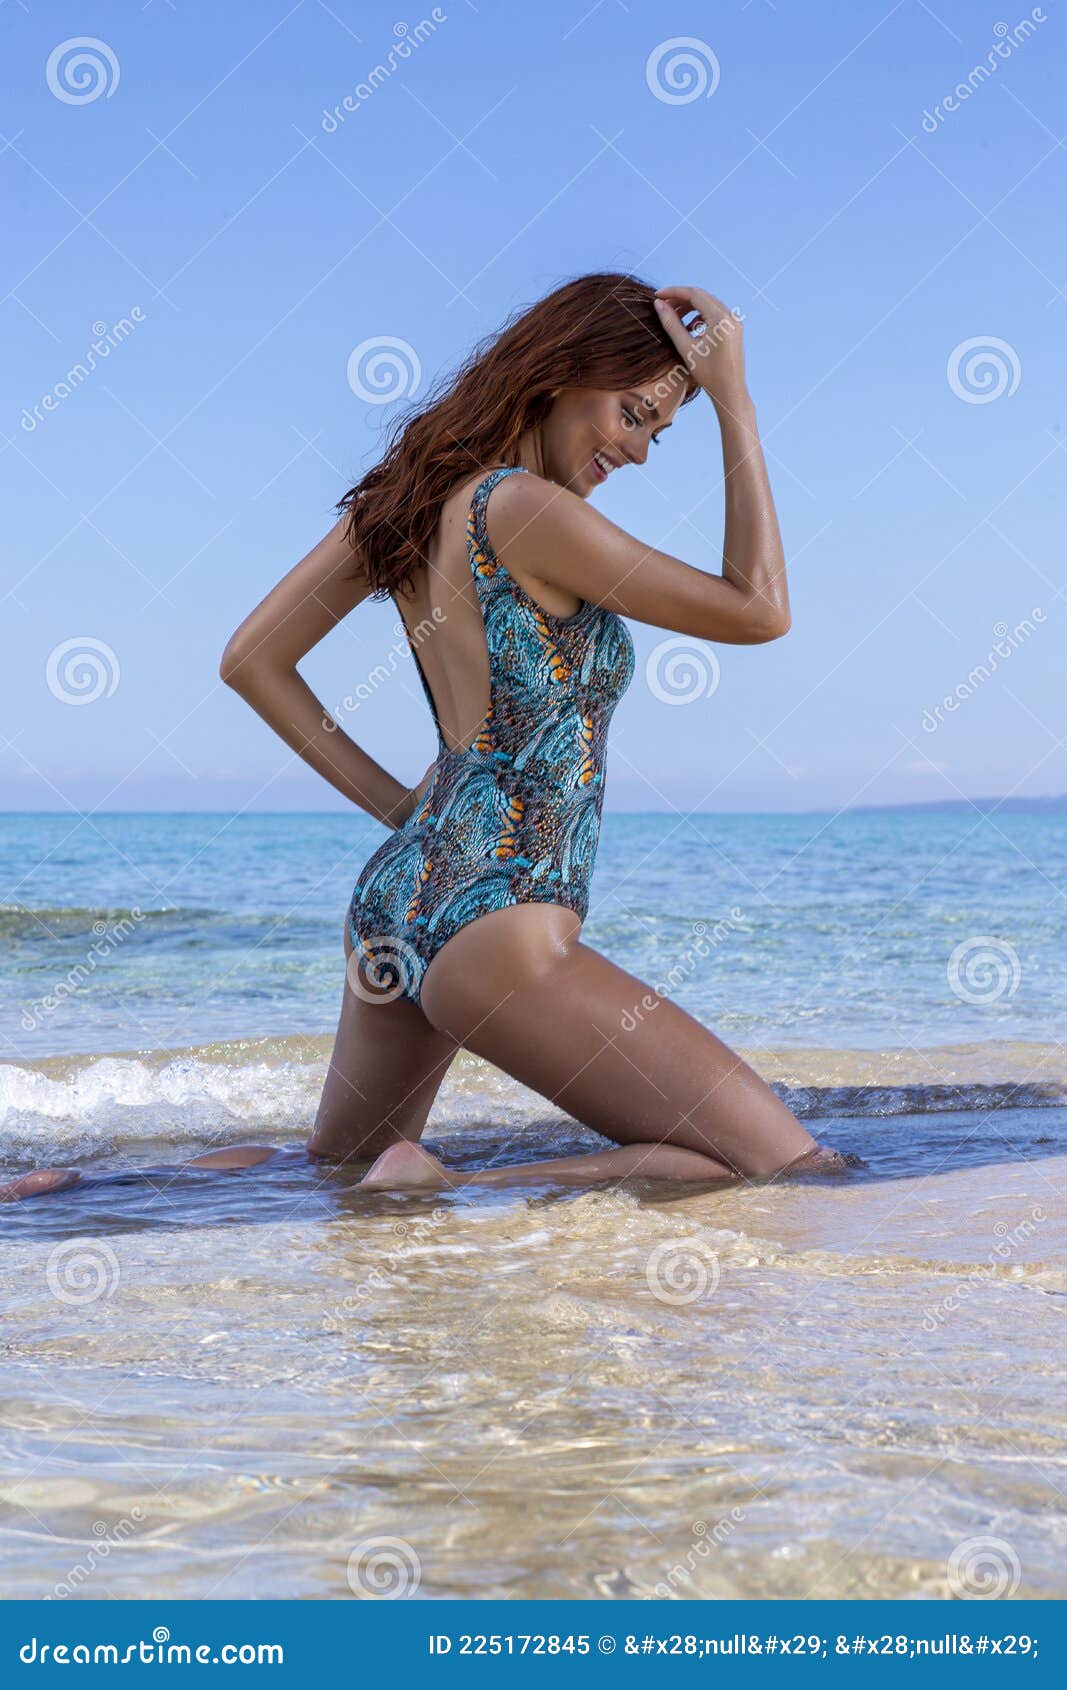 The Best Bikini / Swimwear Photoshoot Poses